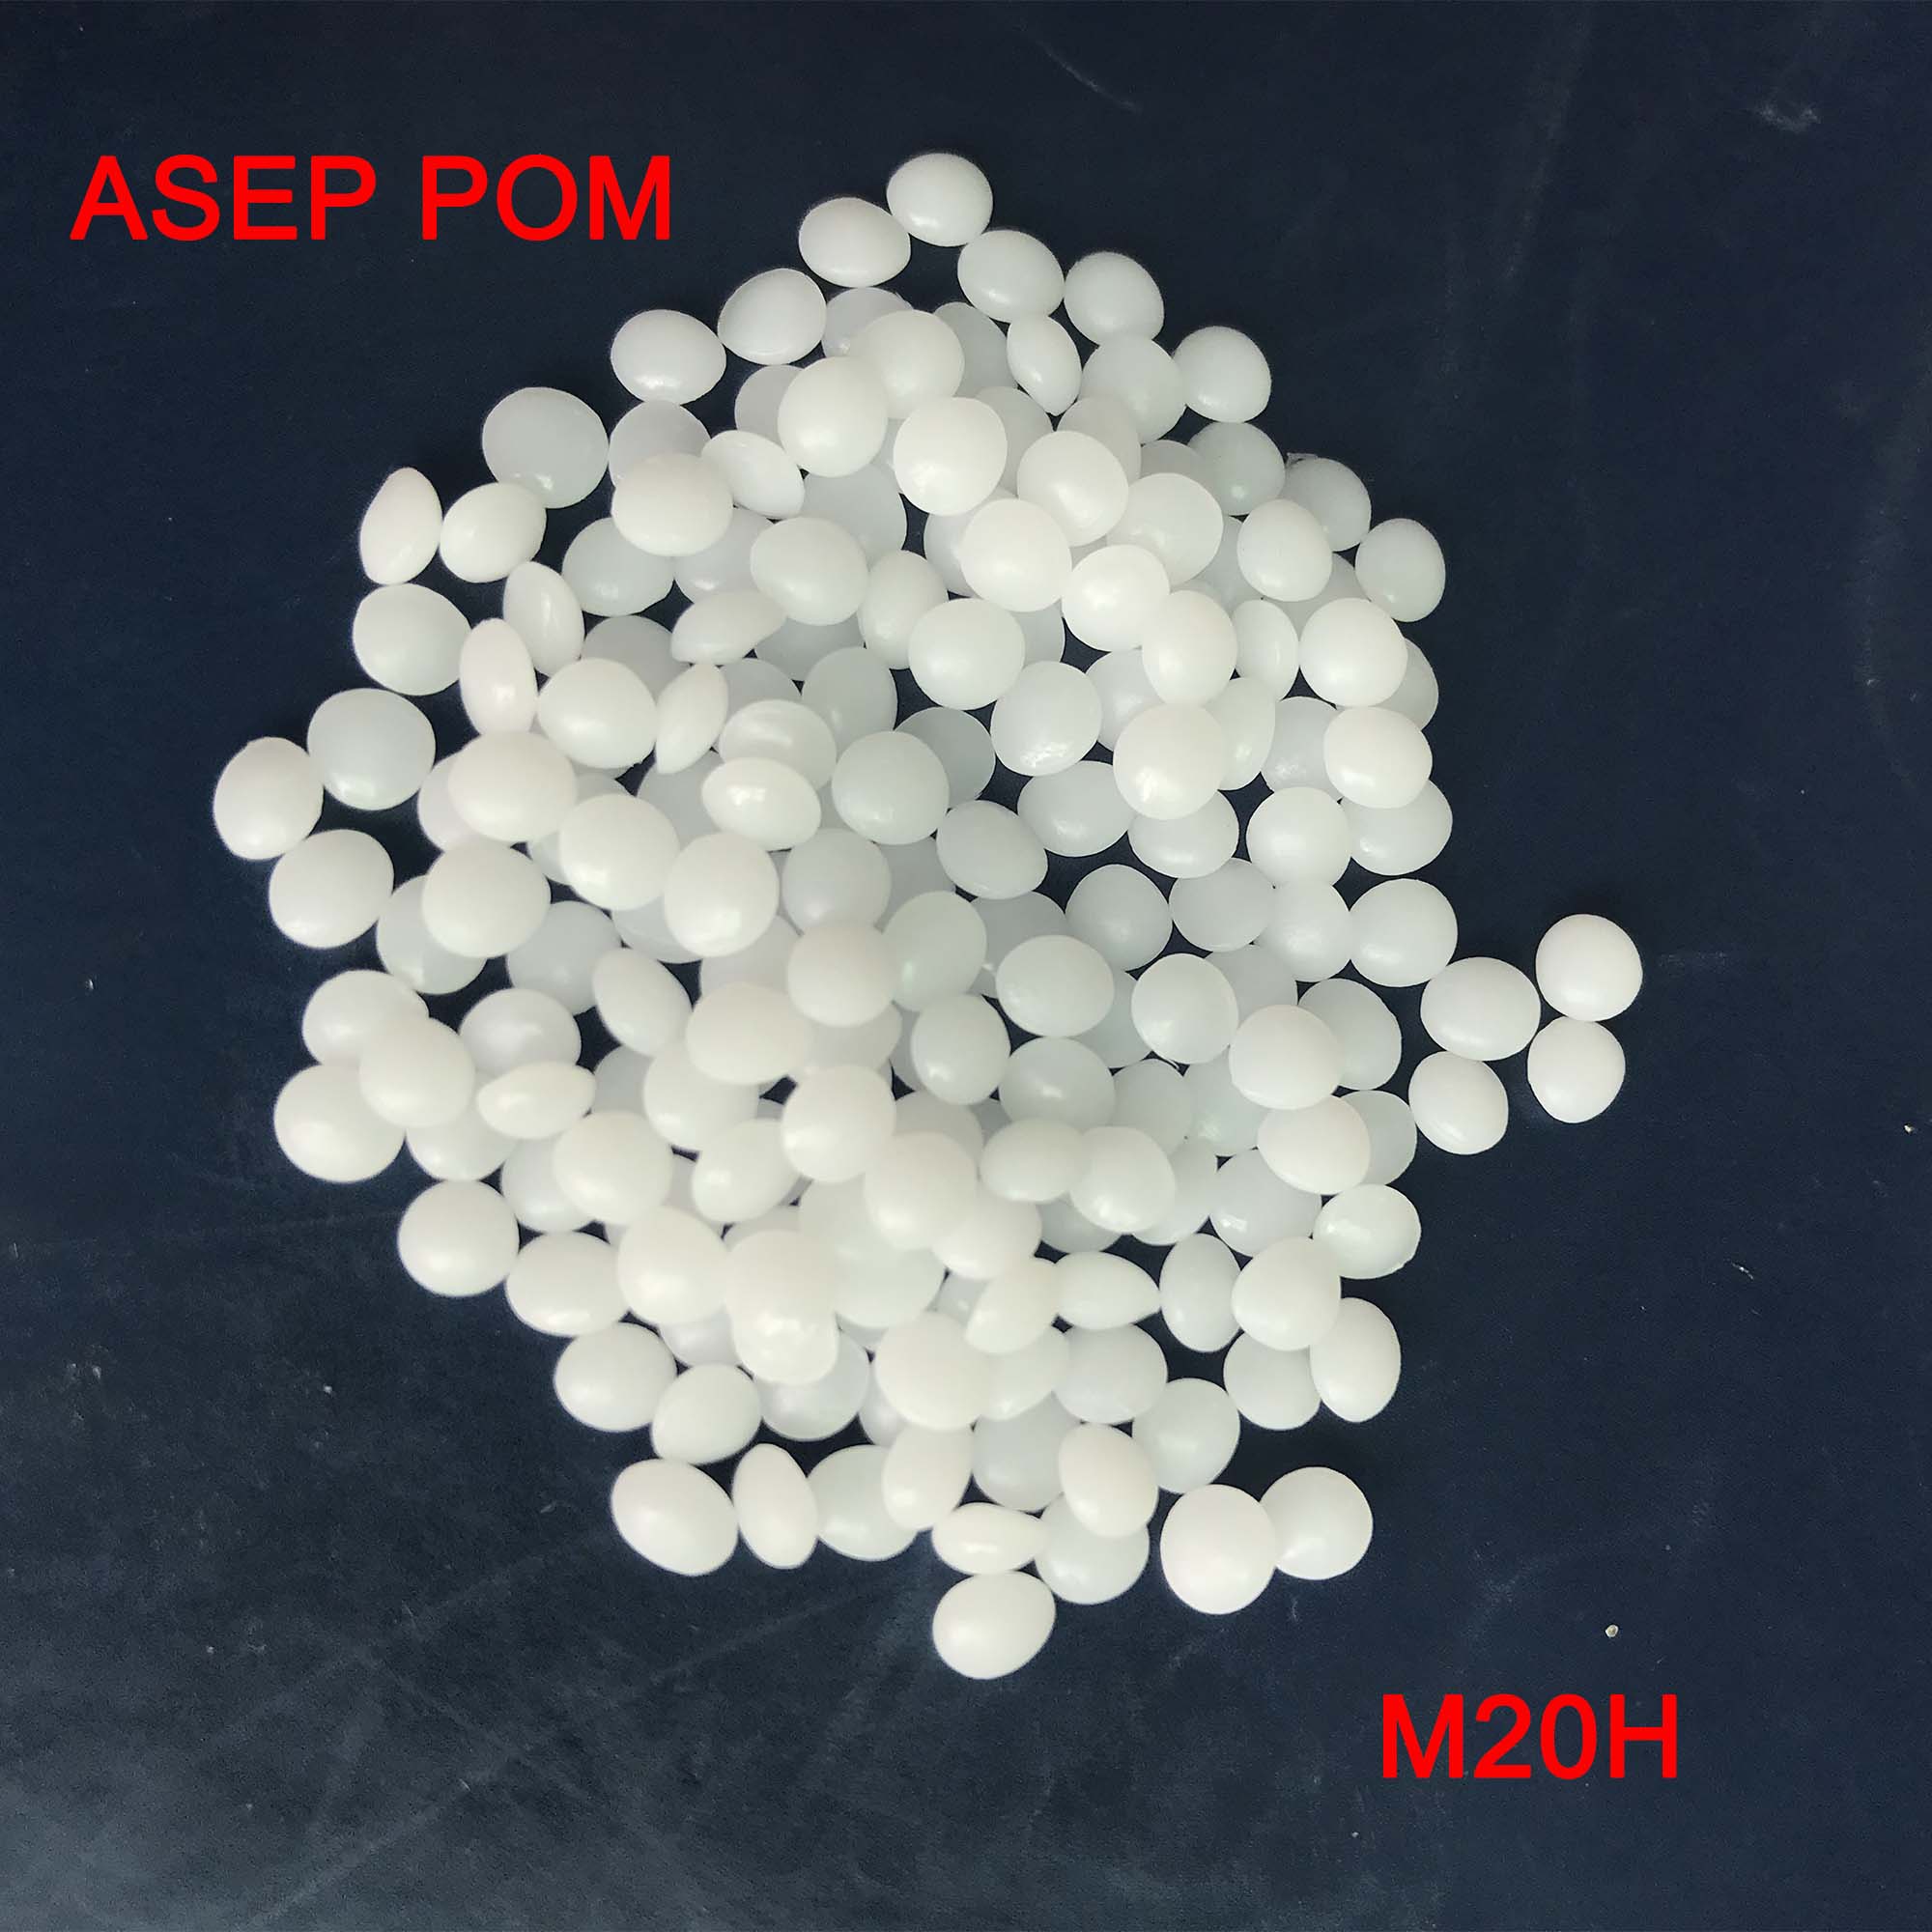 进口优质POM塑料颗粒注塑级通用规格可提供多种配色及改性M20H ASEP POM图片